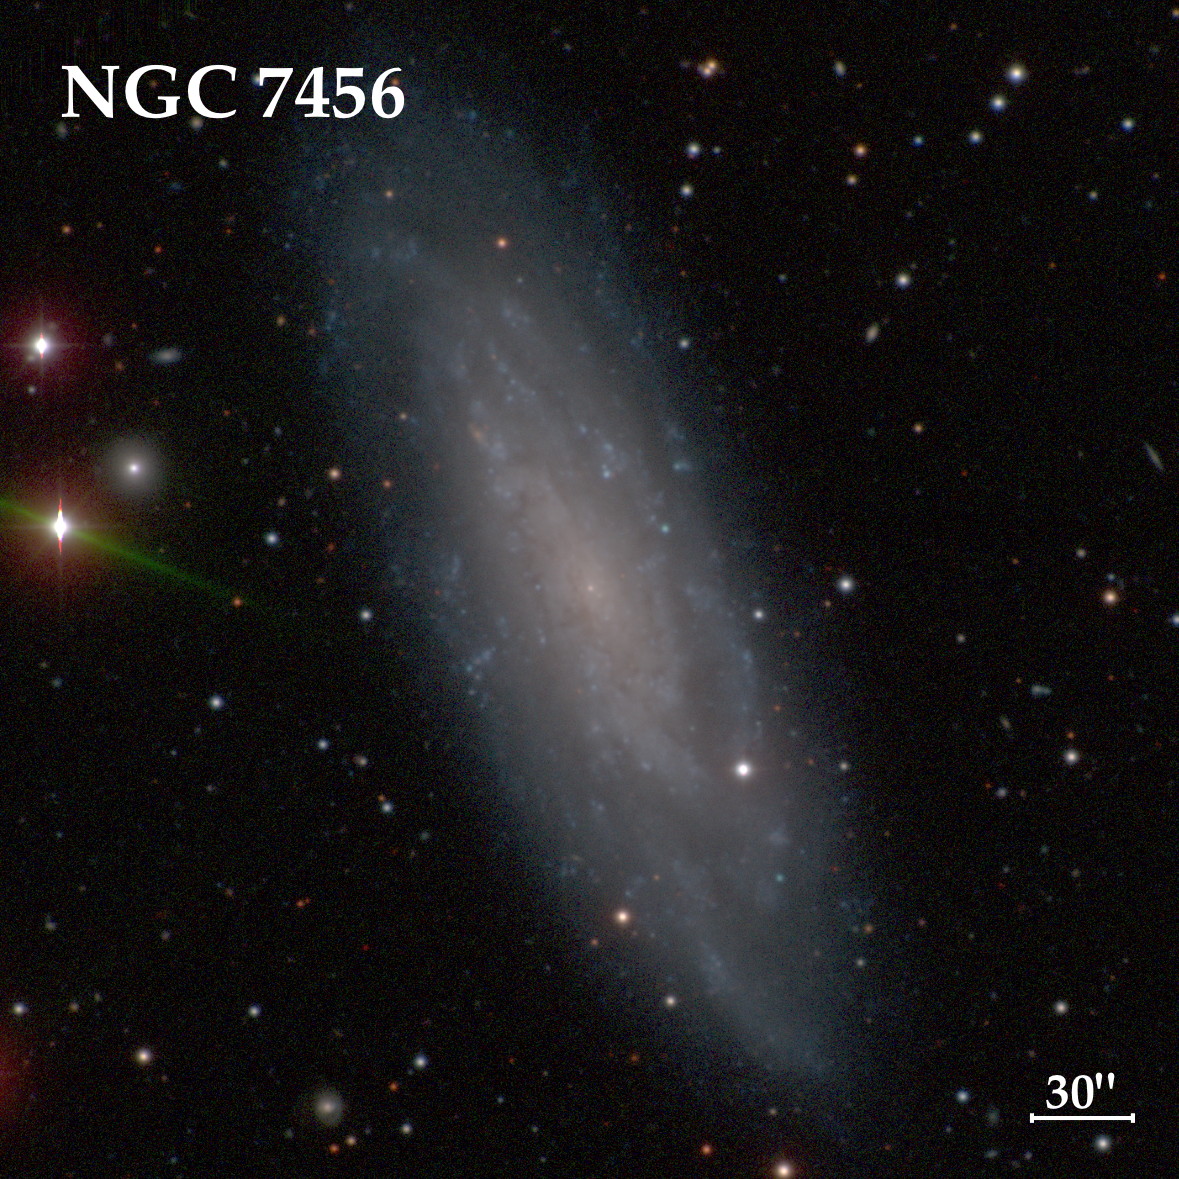 NGC 7456